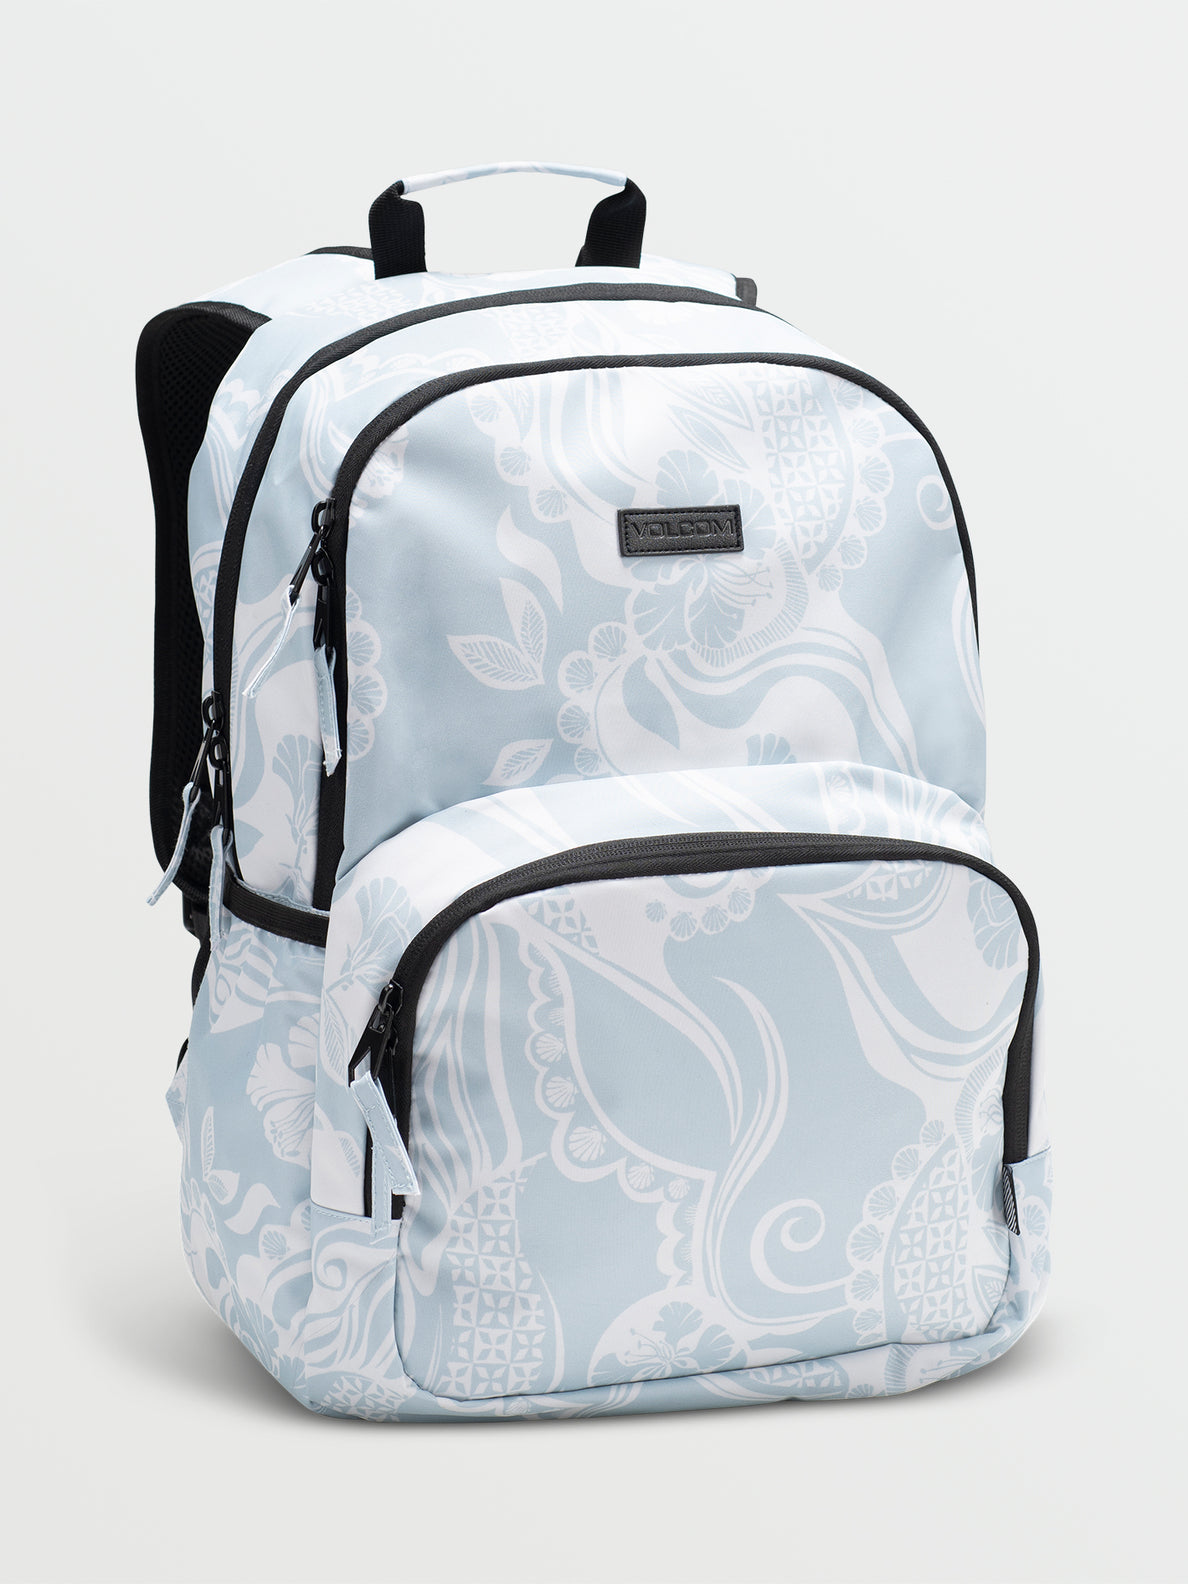 Upperclass Backpack - Cream